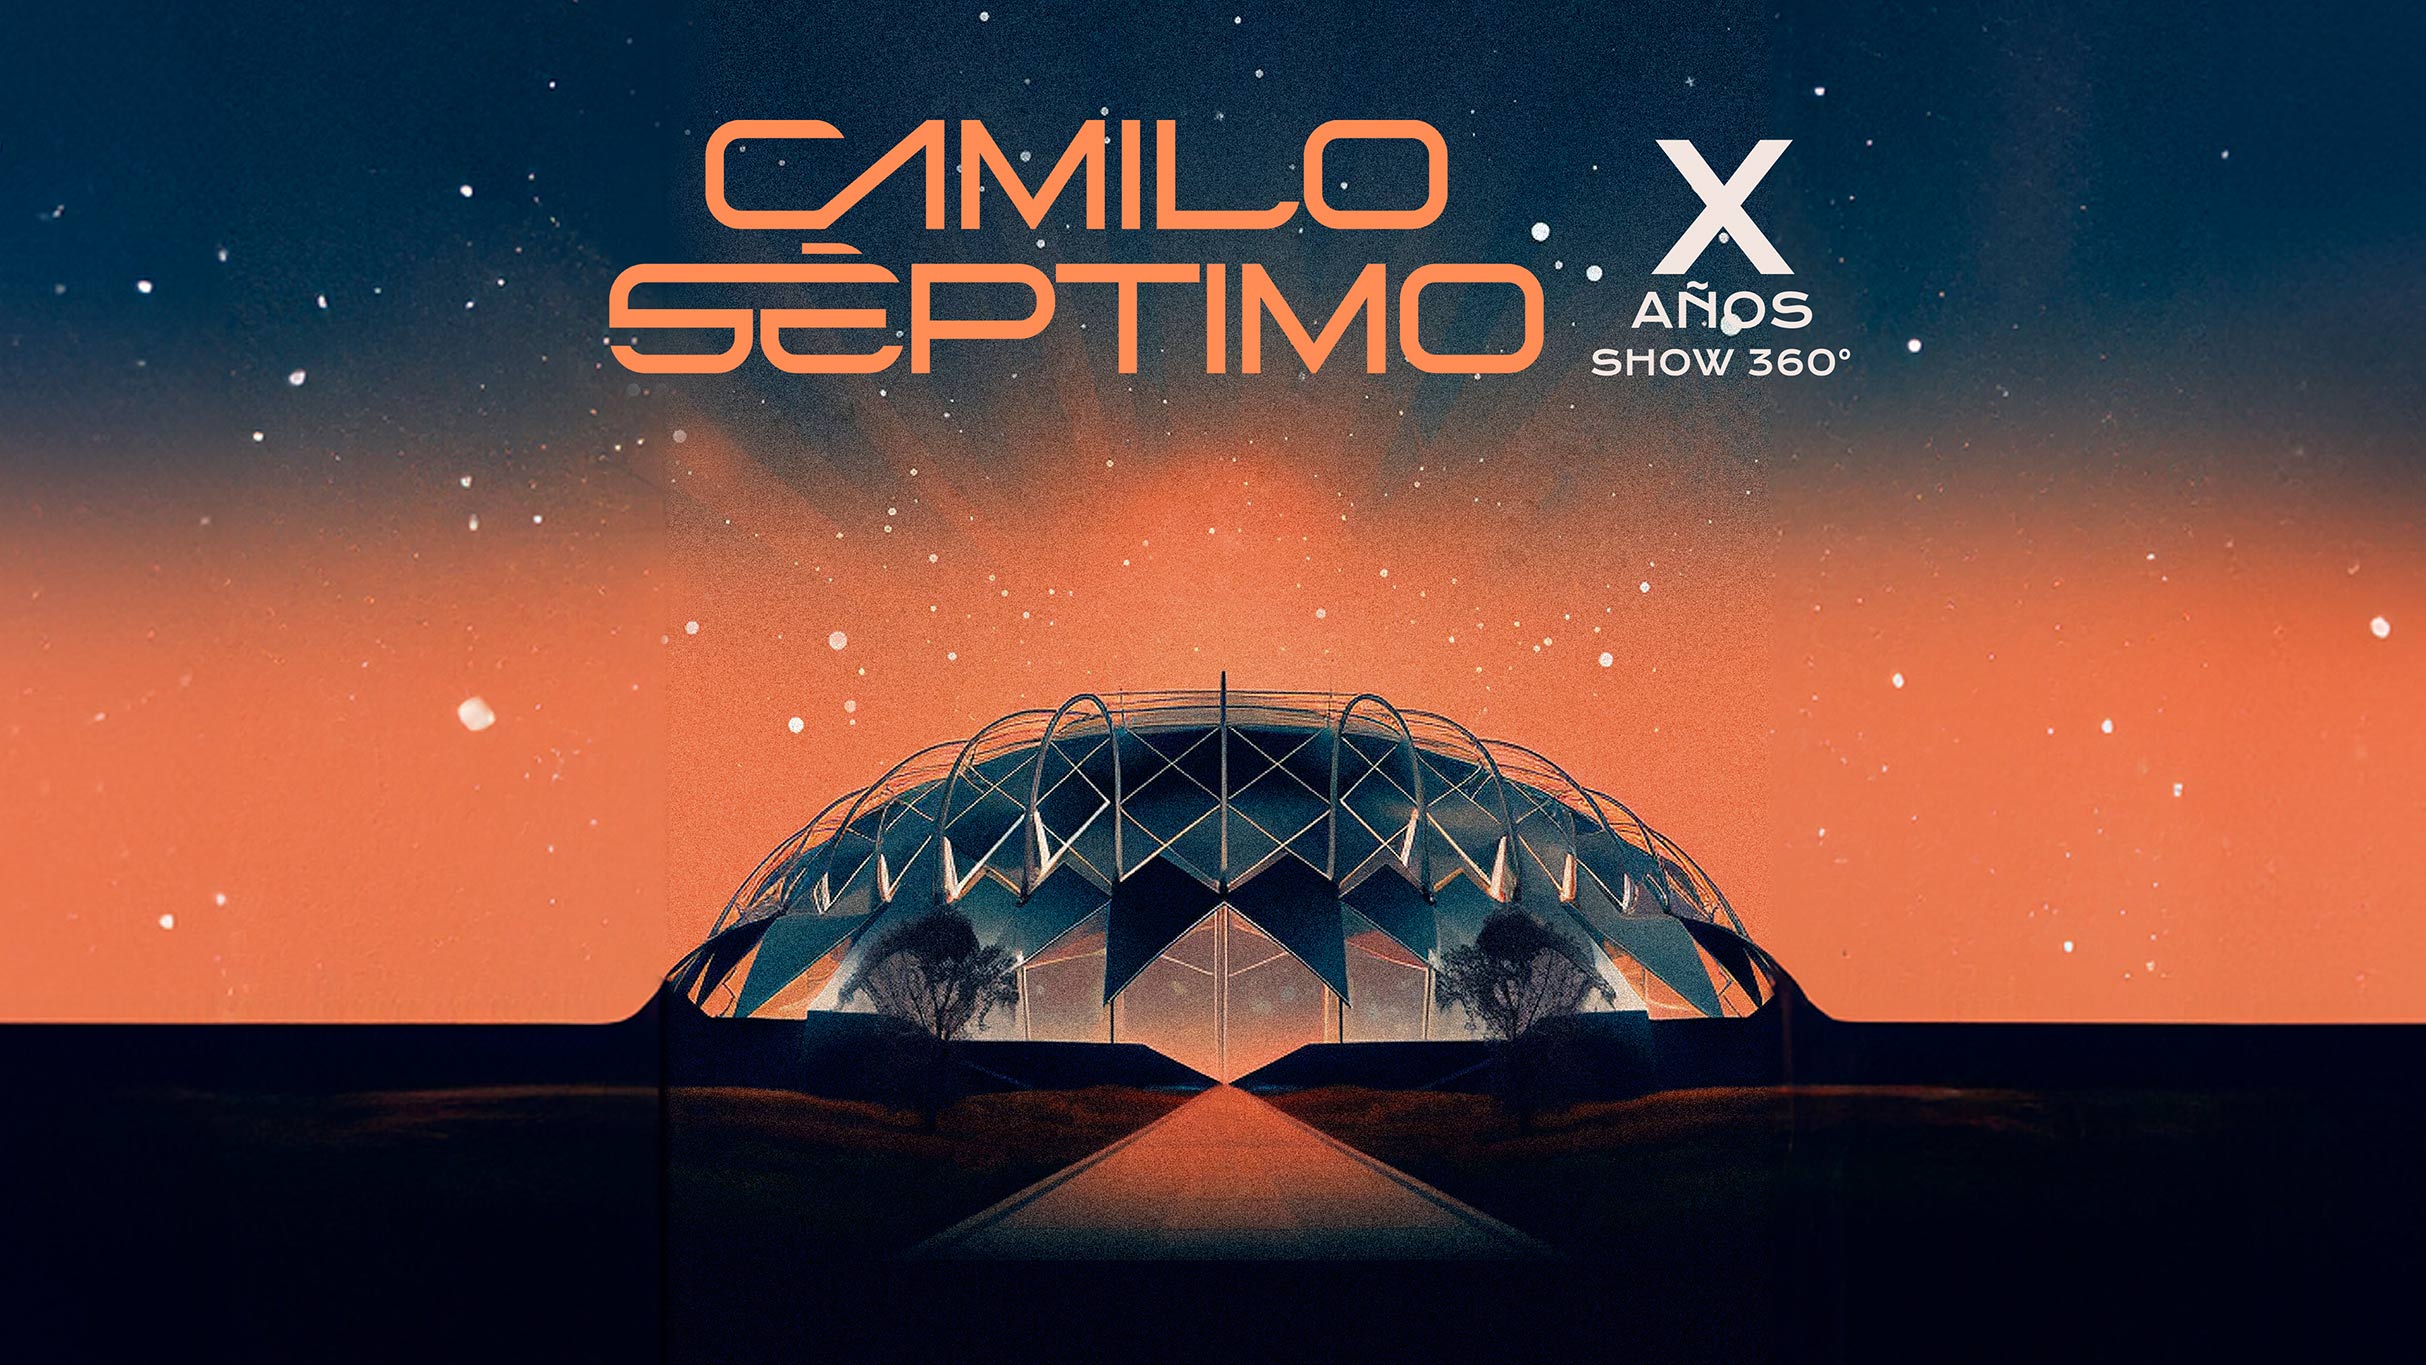 Club Camilo Septimo